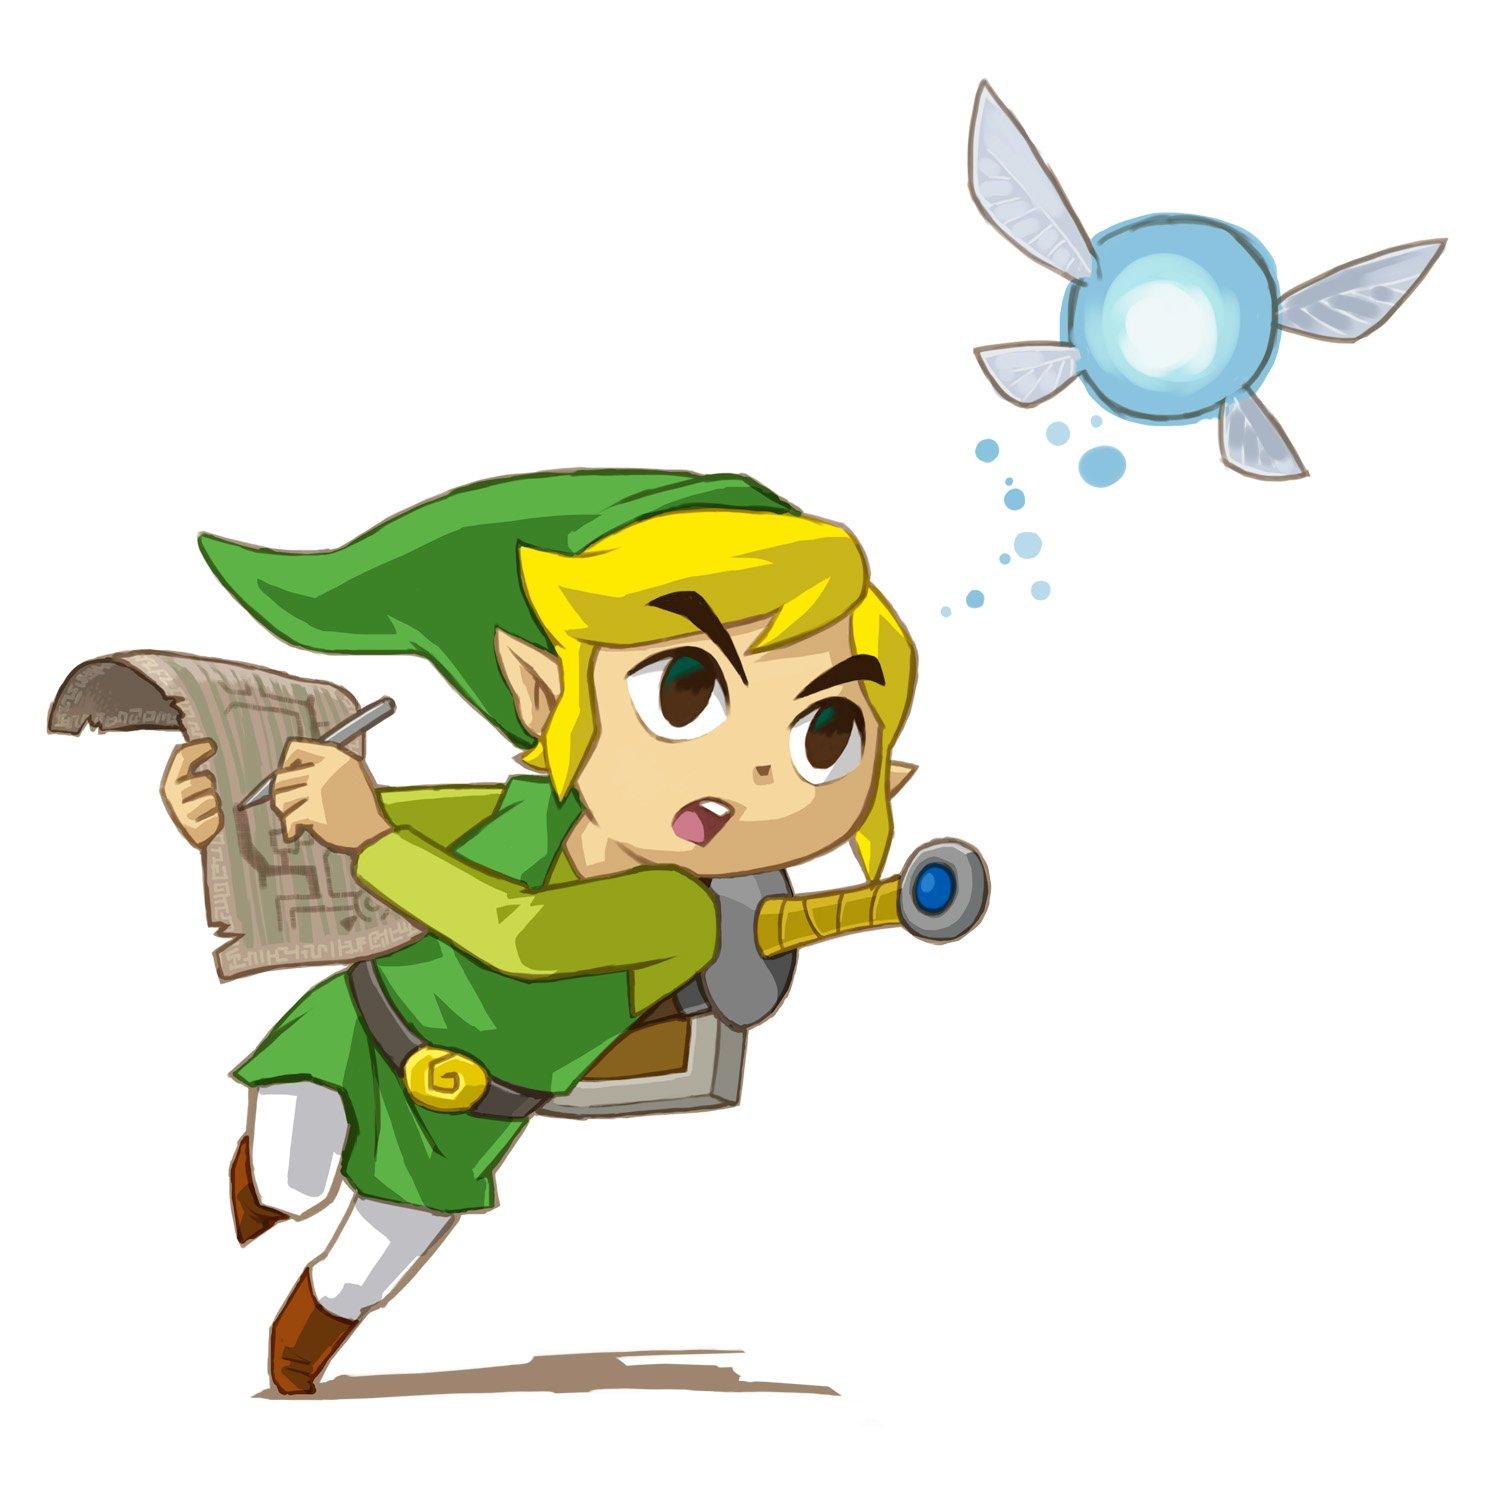 The Legend of Zelda: Phantom Hourglass - Metacritic